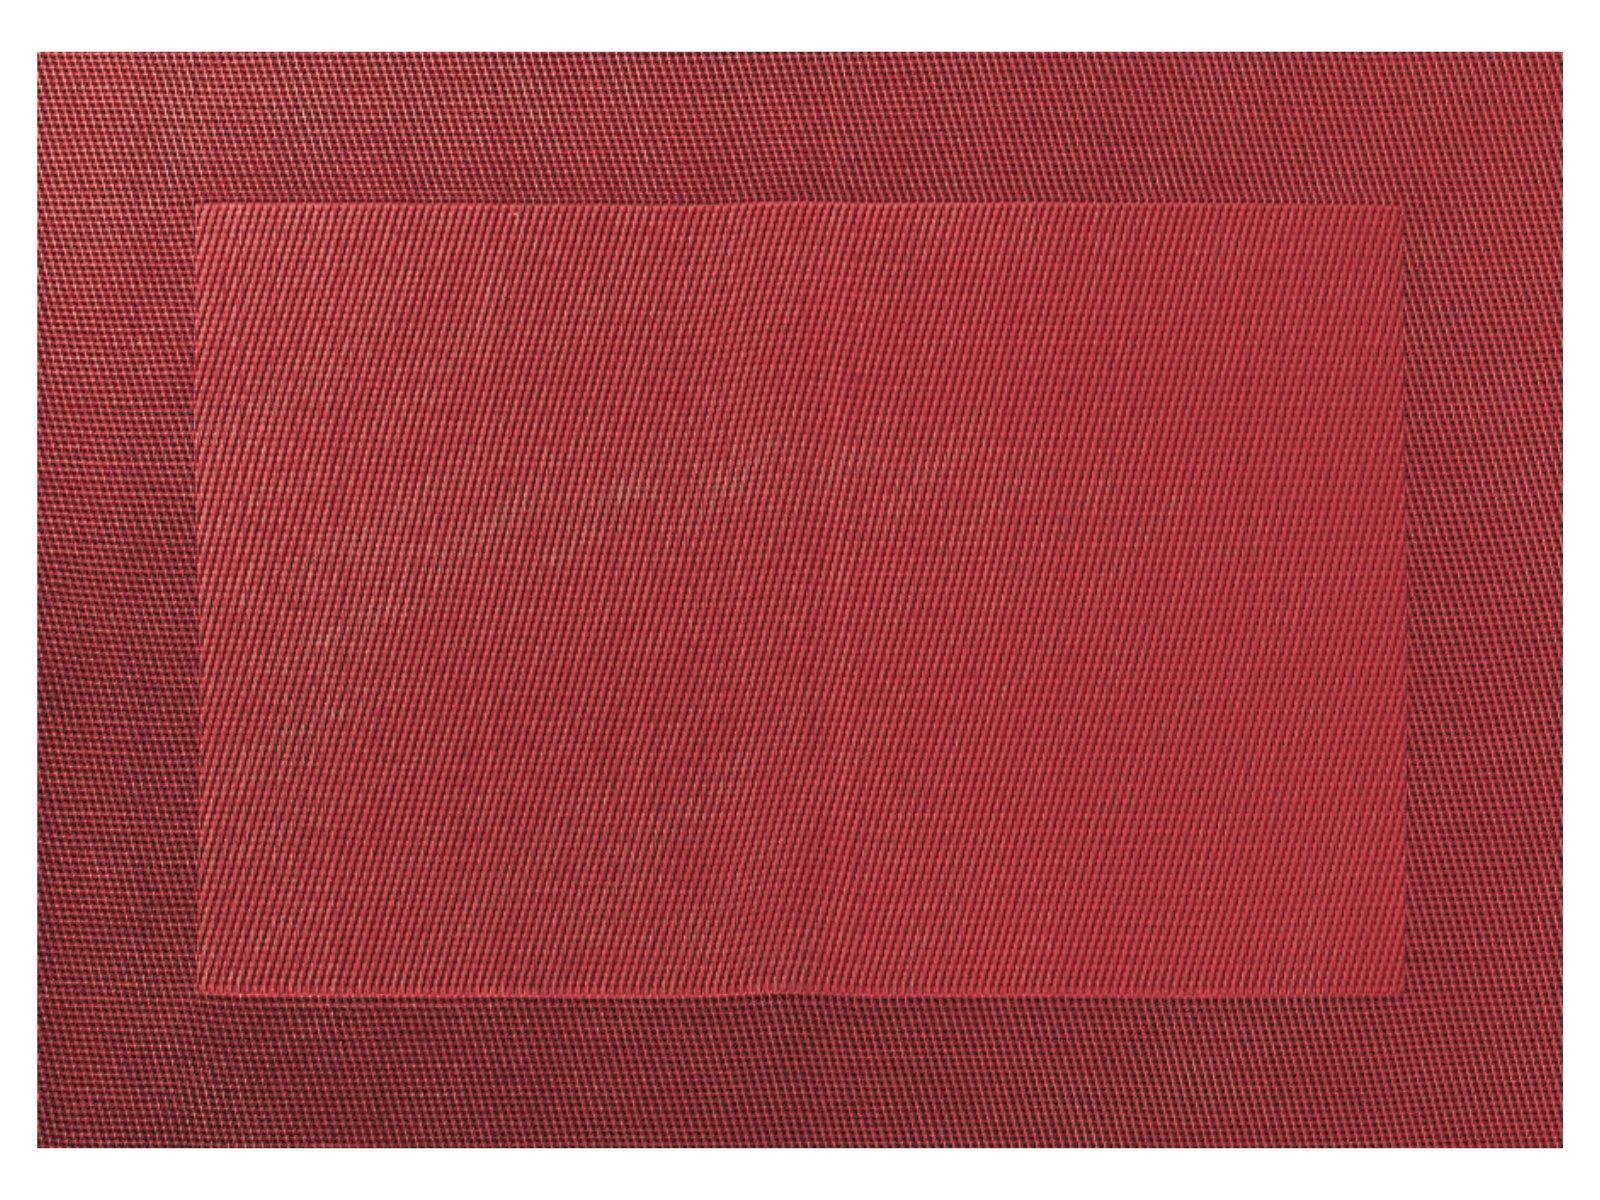 Platzset, Tischset gewebter Rand granatapfelrot 46 x 33 cm, ASA SELECTION